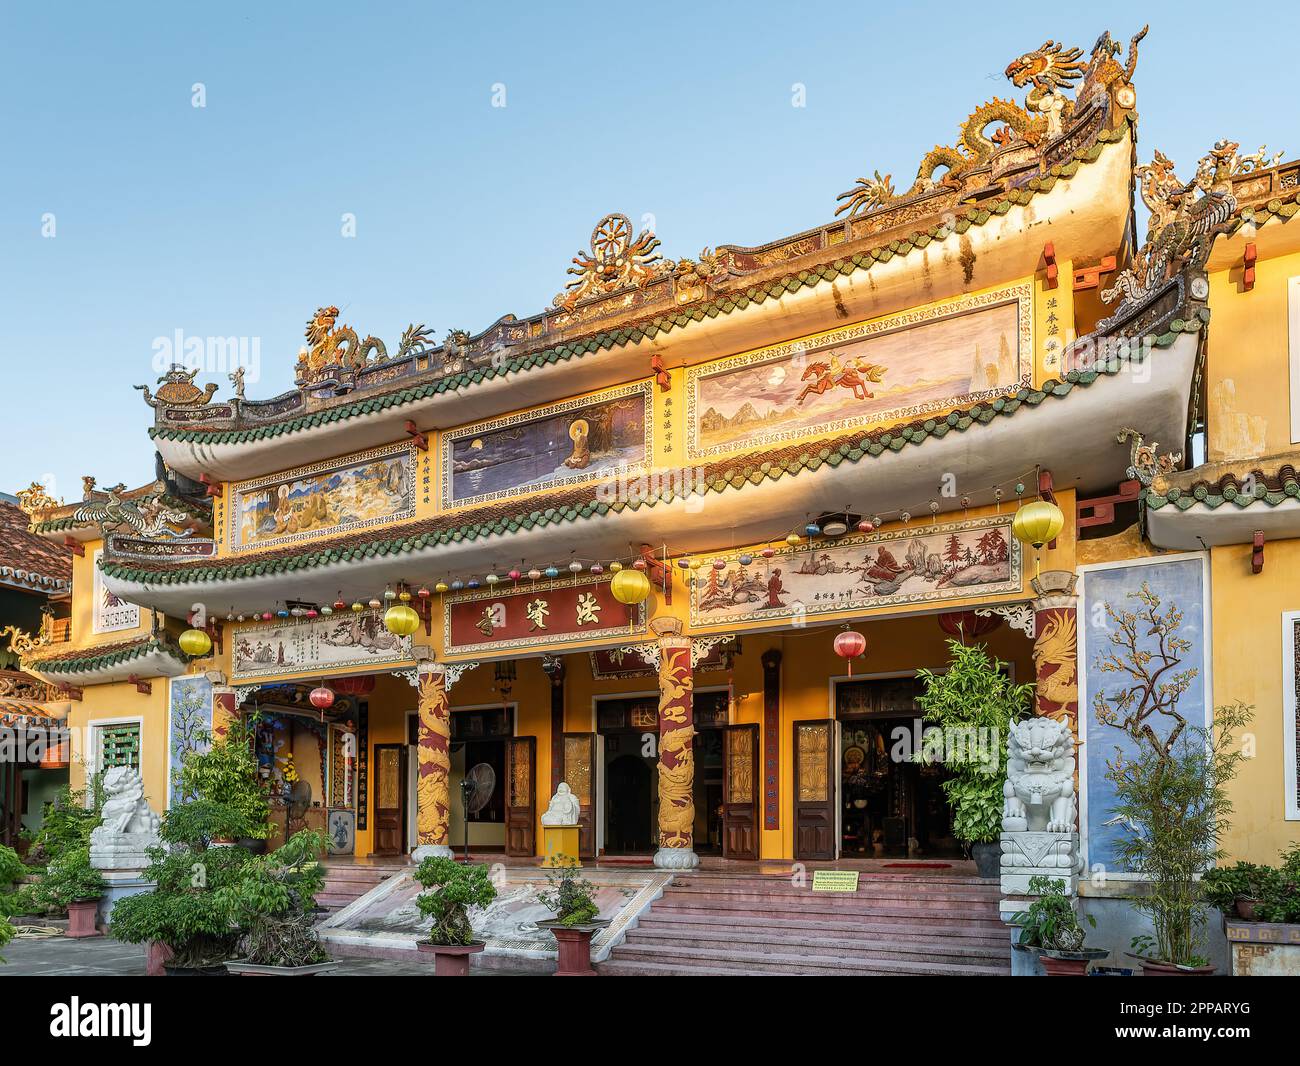 Le temple de Phap Bao à Hoi an, province de Quang Nam, Vietnam. La vieille ville de Hoi an est un site classé au patrimoine mondial, et célèbre pour son bâtiment bien conservé Banque D'Images